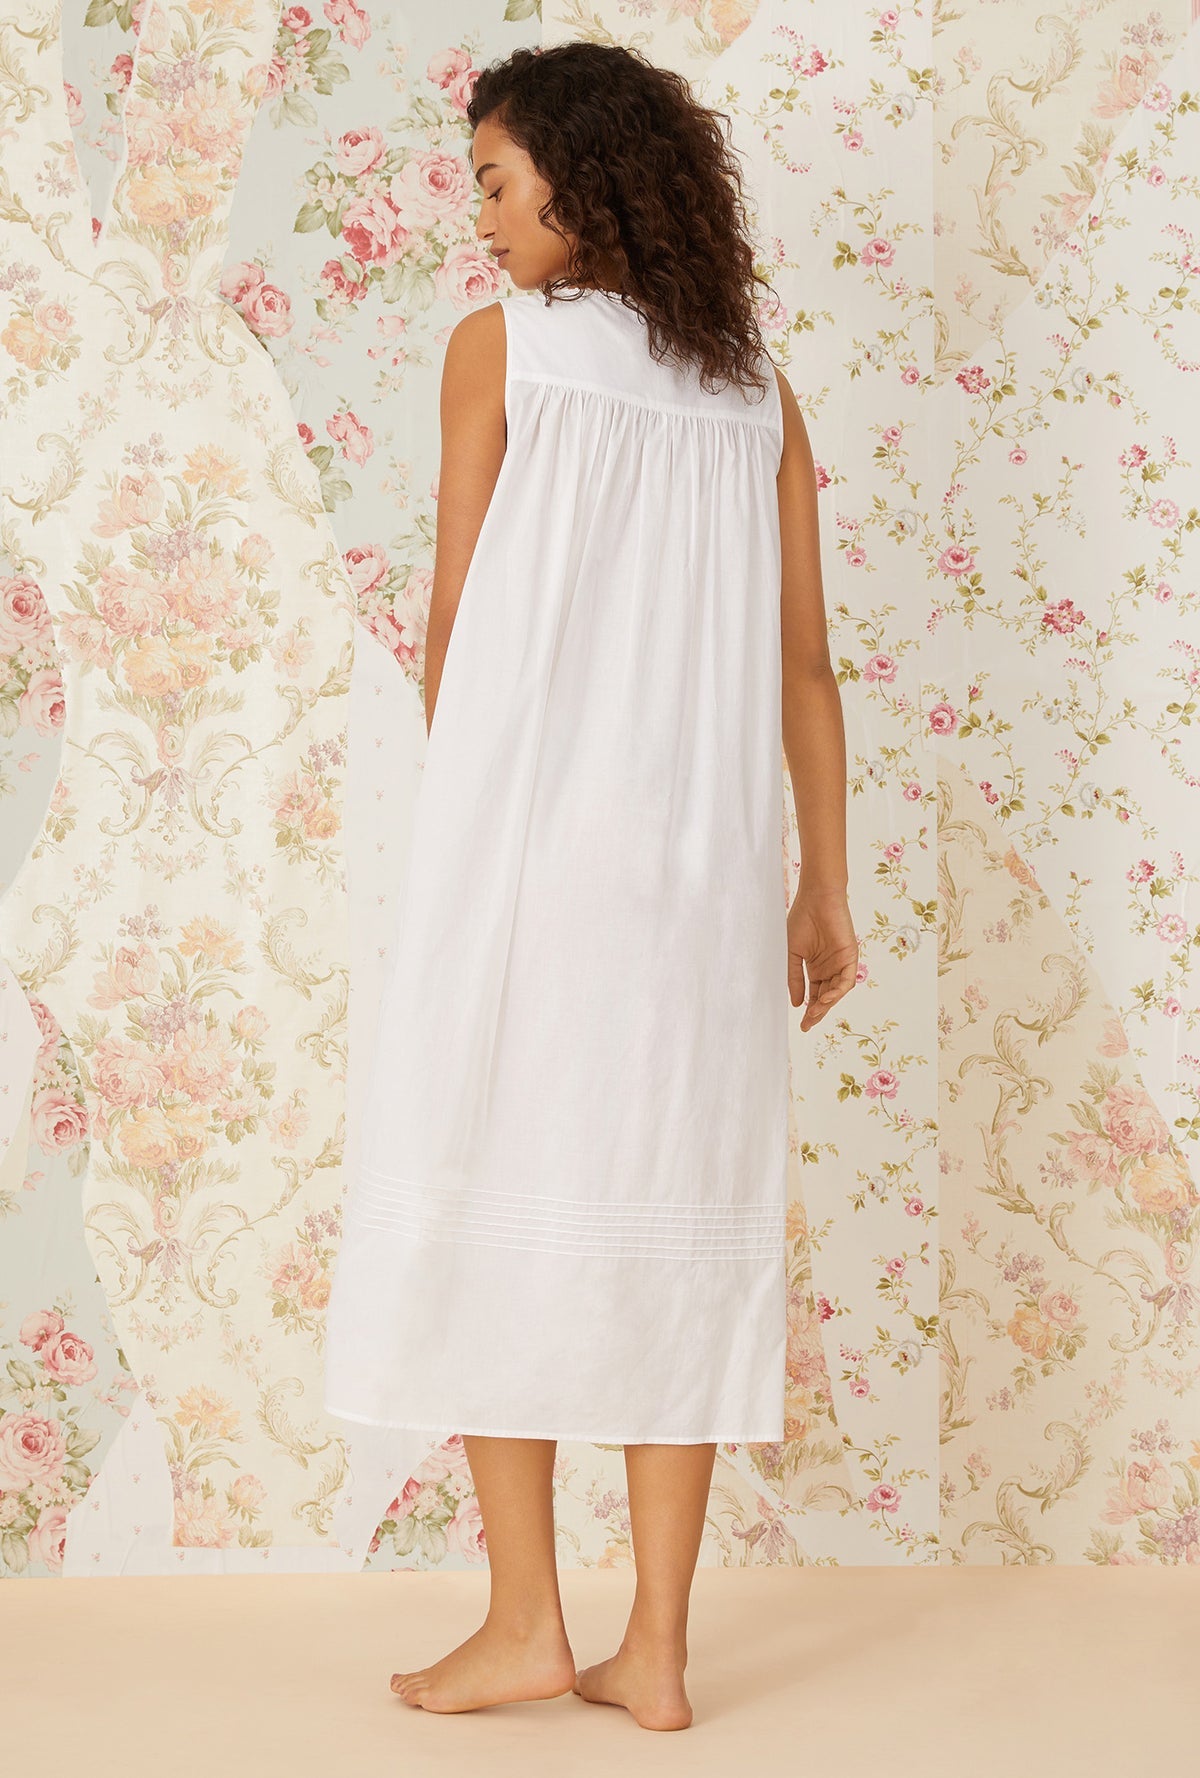 White Cotton Ballet Nightgown Small White